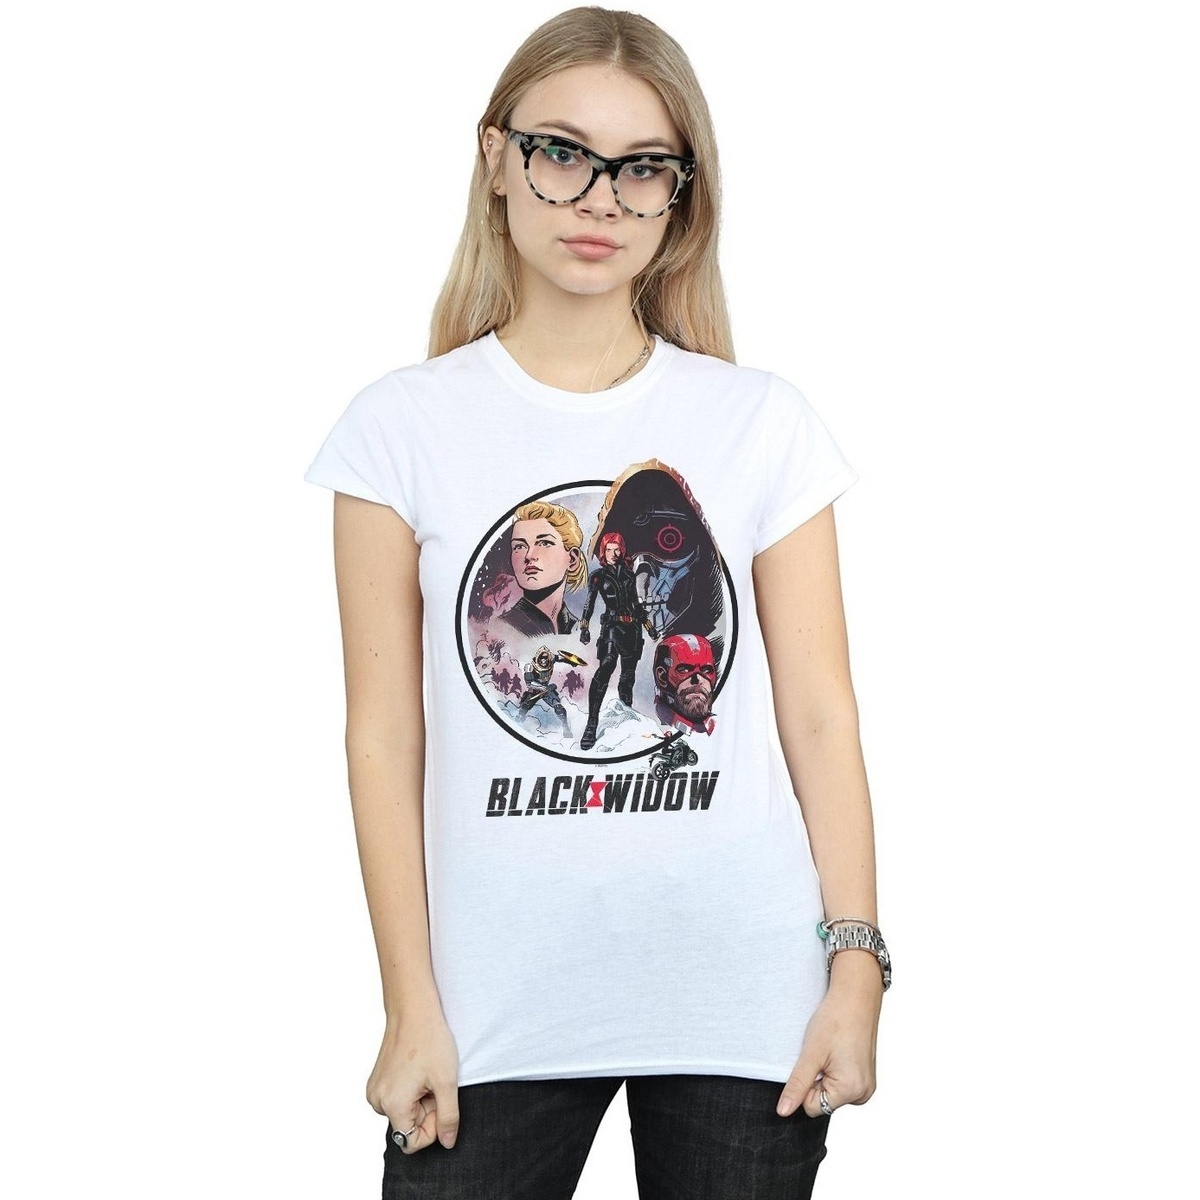 Vêtements Femme T-shirt Manches Courtes En Coton Jeremmen Black Widow Movie Vintage Circle Blanc